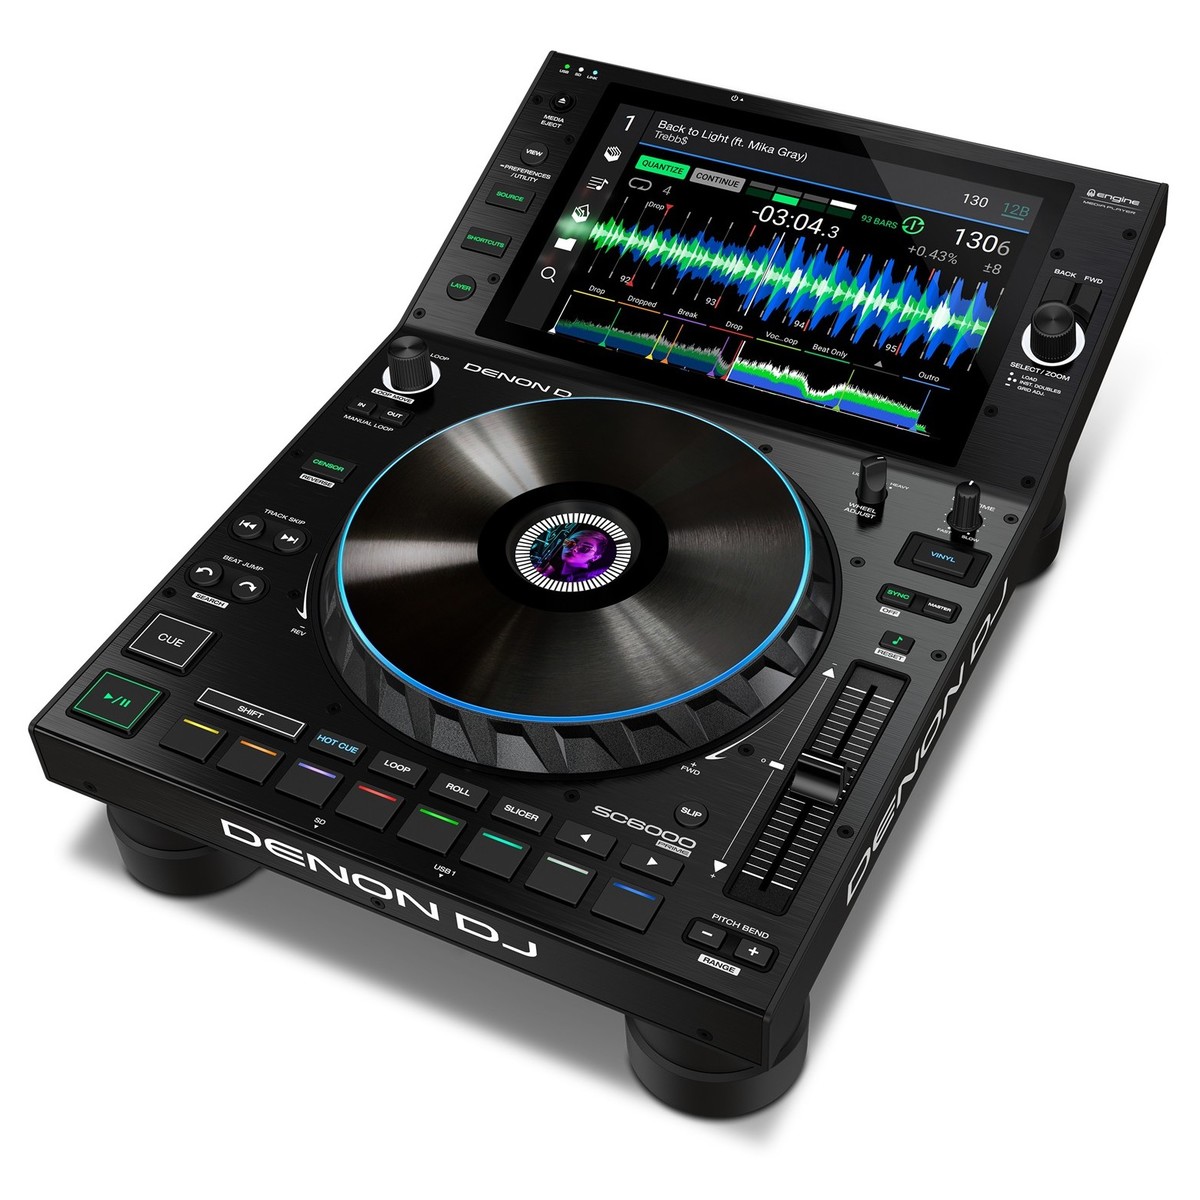 DENON DJ SC6000-PRIME LETTORE MEDIA PLAYER DUAL LAYER PER DJ USB SD STREAMING WI-FI CON DISPLAY HD 10.1 MULTI-TOUCH 2